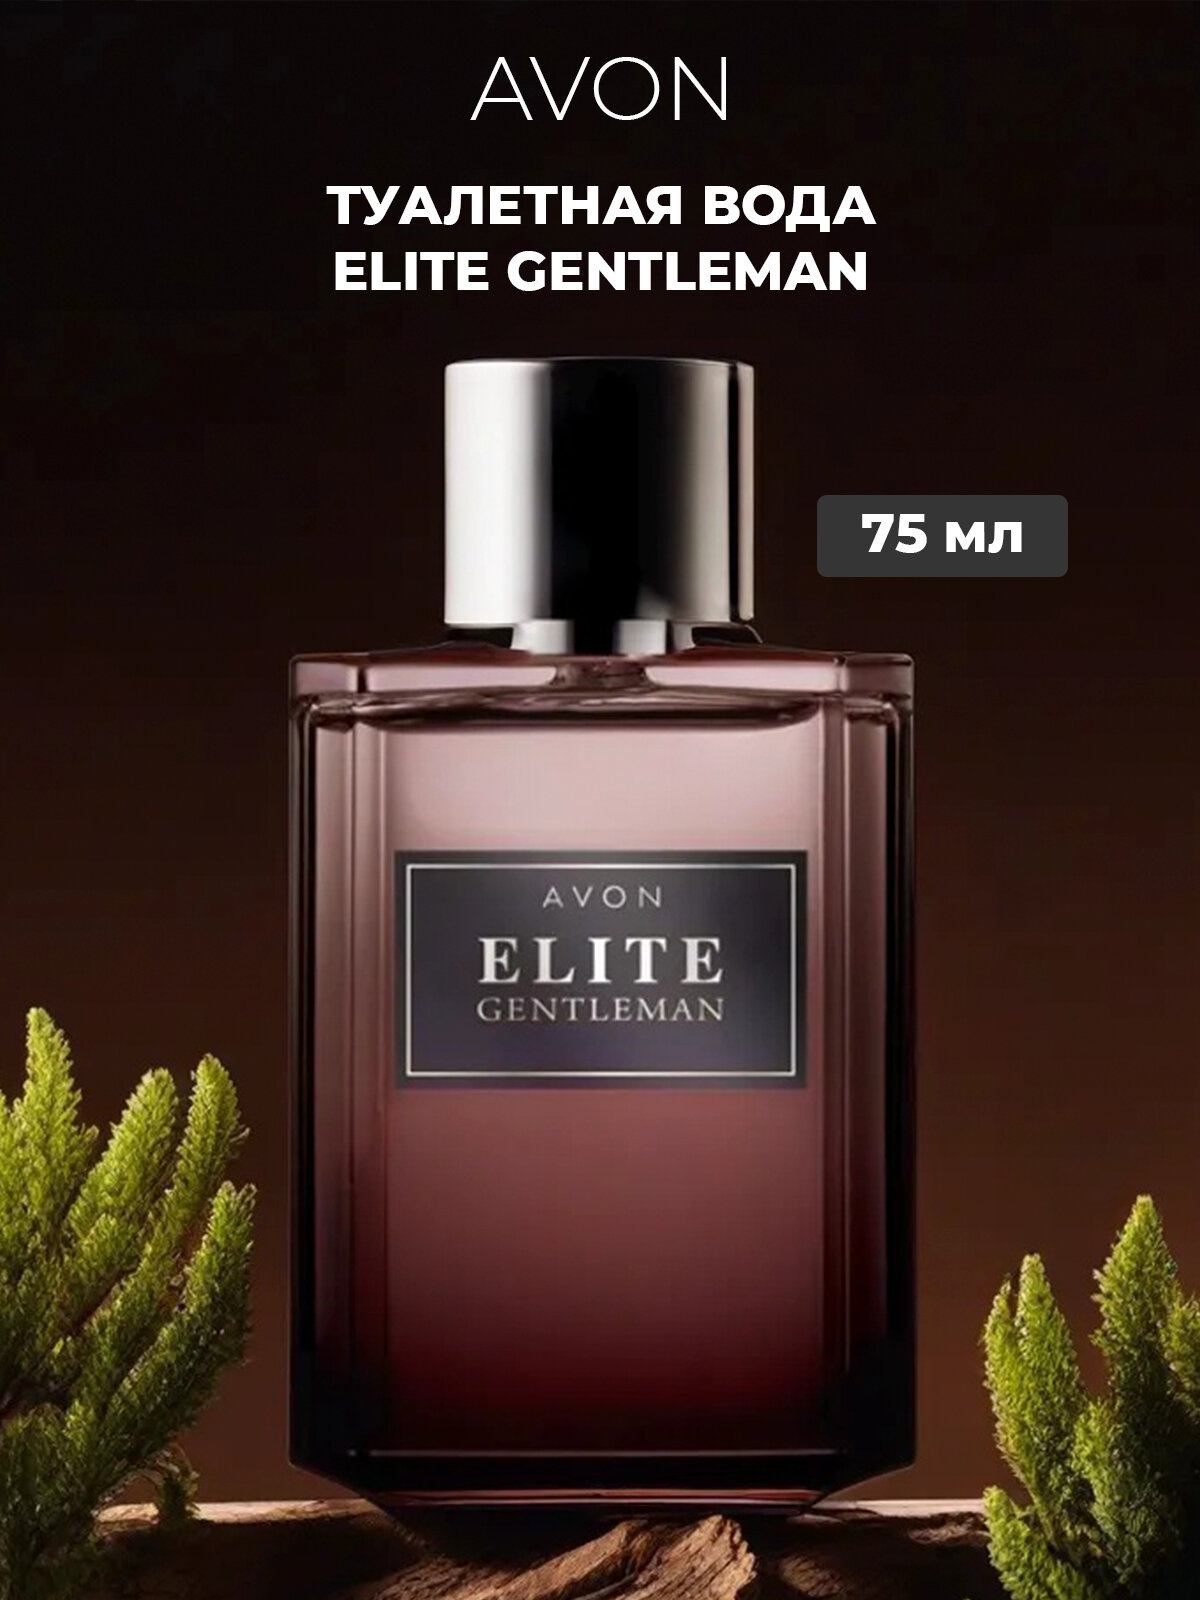 Мужская туалетная вода Avon "Elite gentleman" для него 75 мл, духи оригинал от эйвон для мужчин